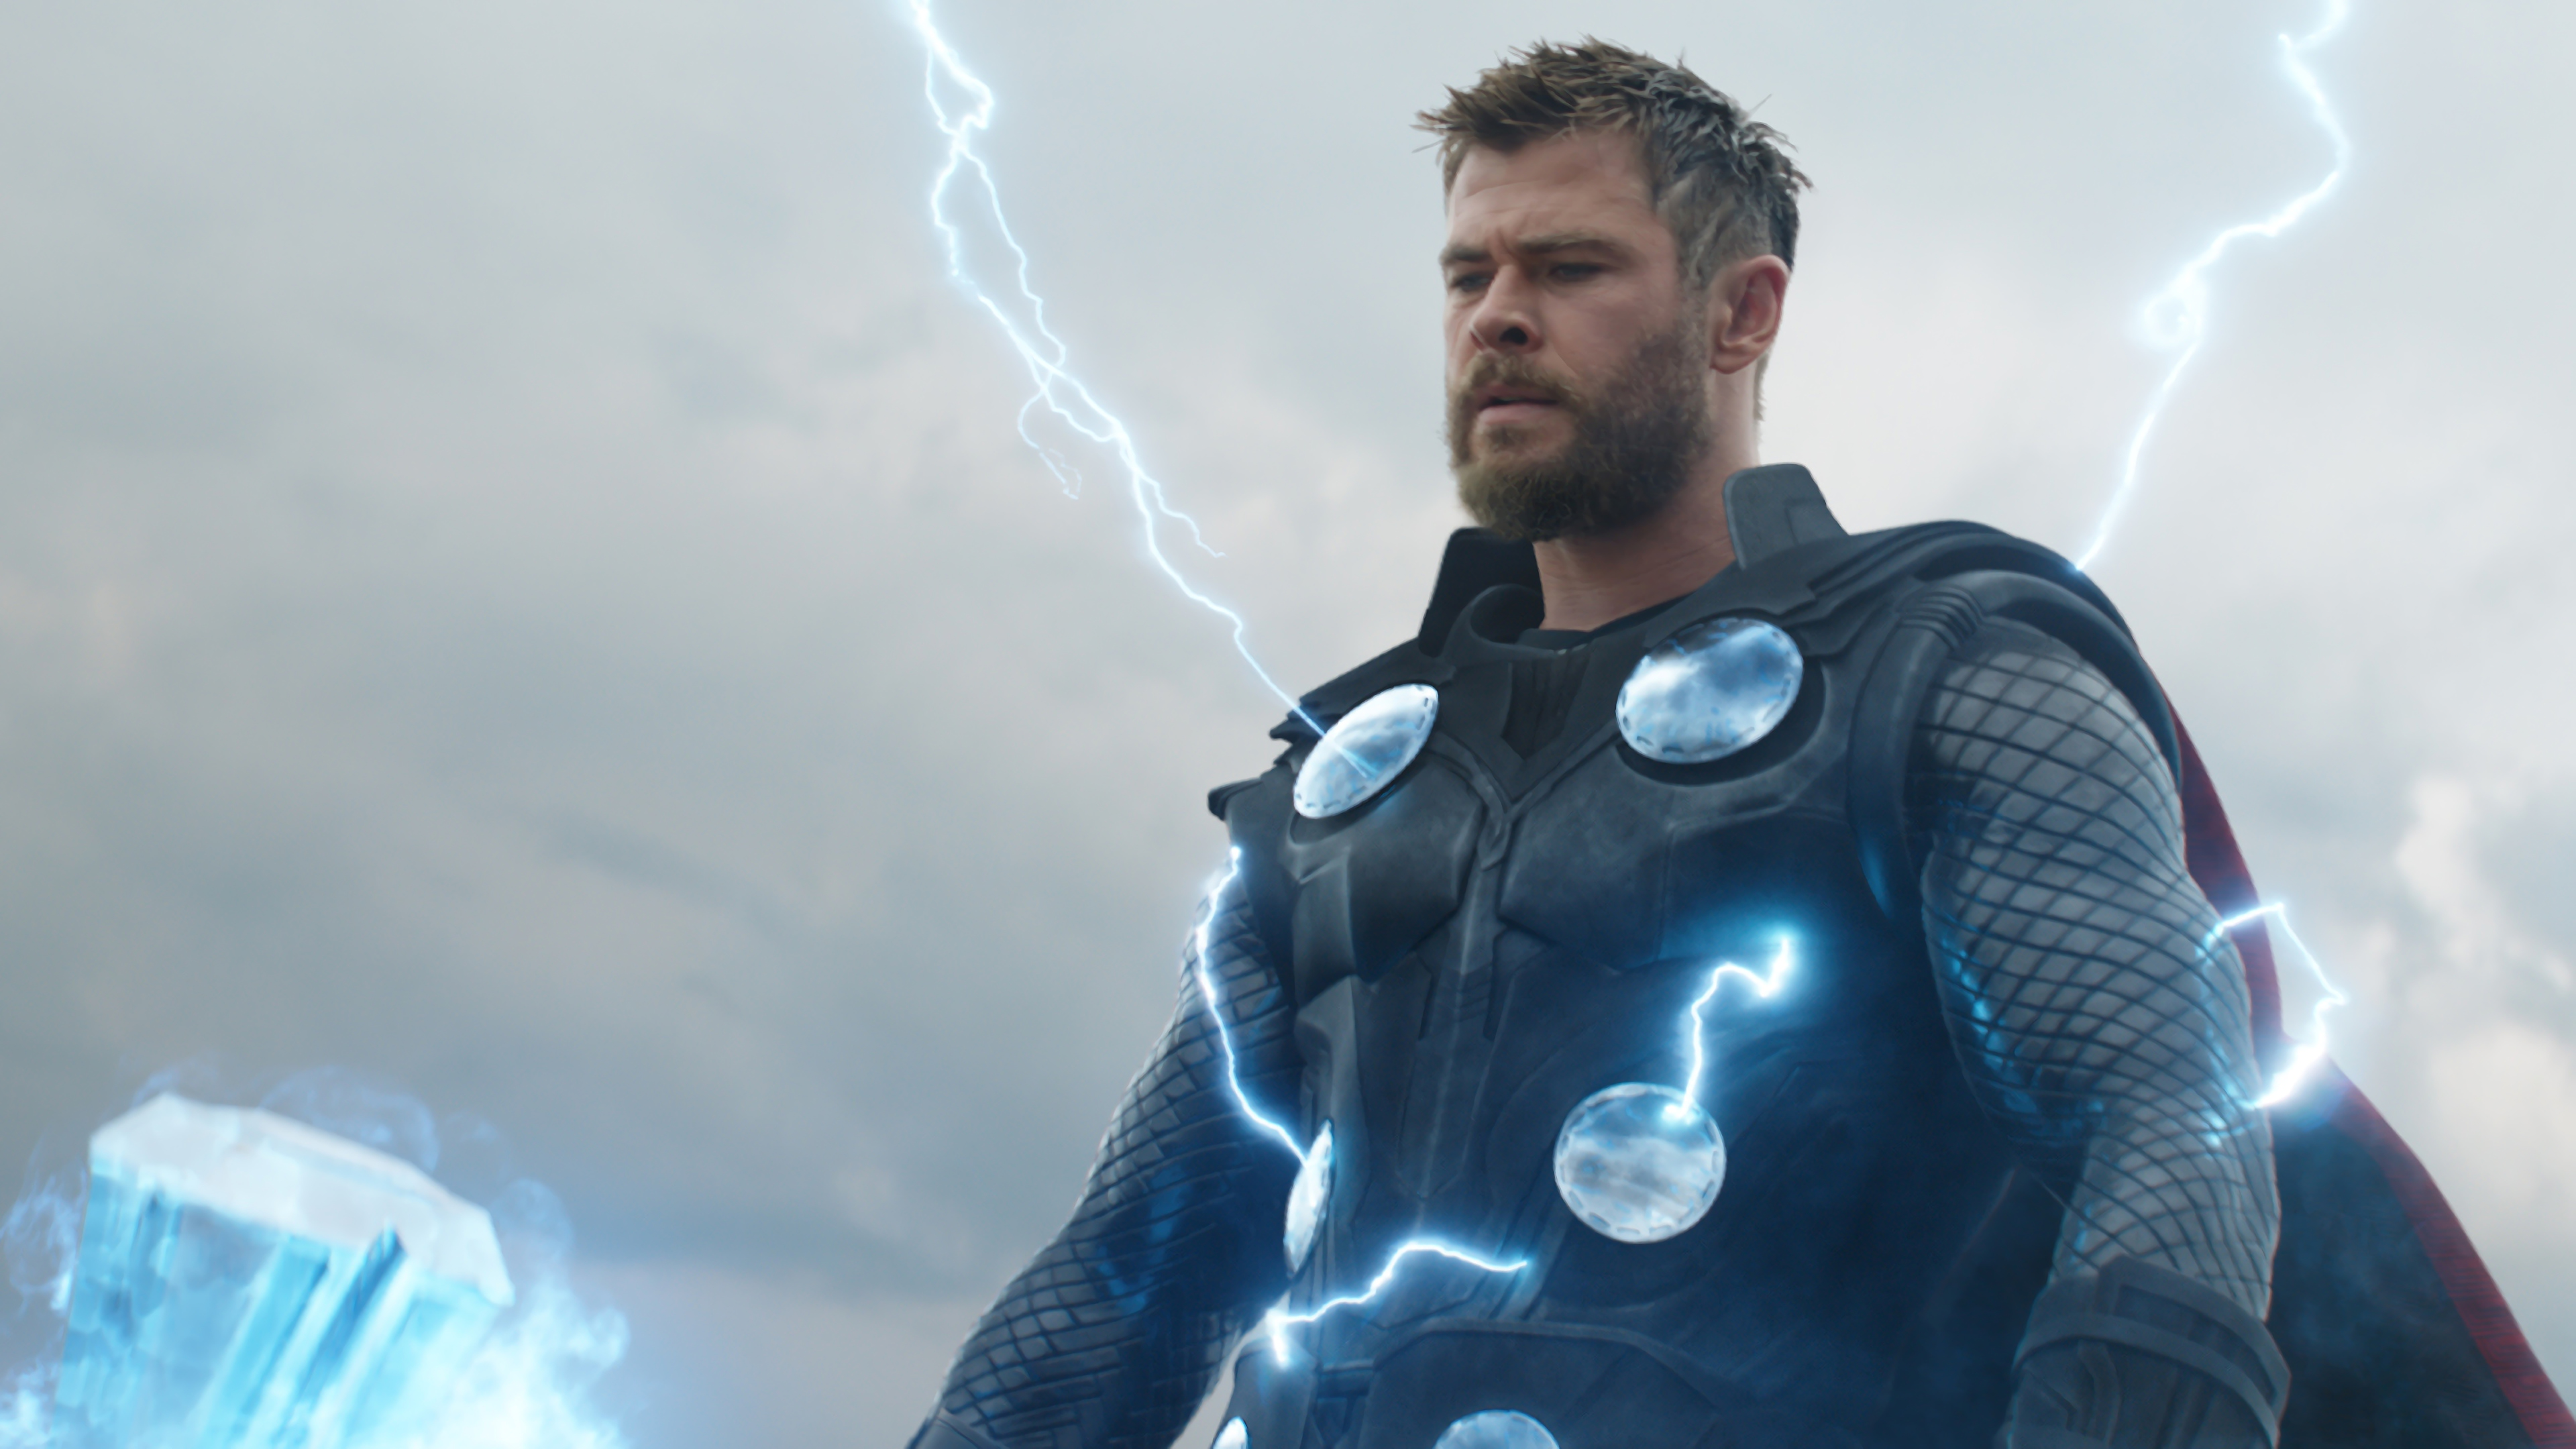 Download mobile wallpaper Lightning, Beard, Armor, Movie, Thor, The Avengers, Chris Hemsworth, Avengers Endgame for free.